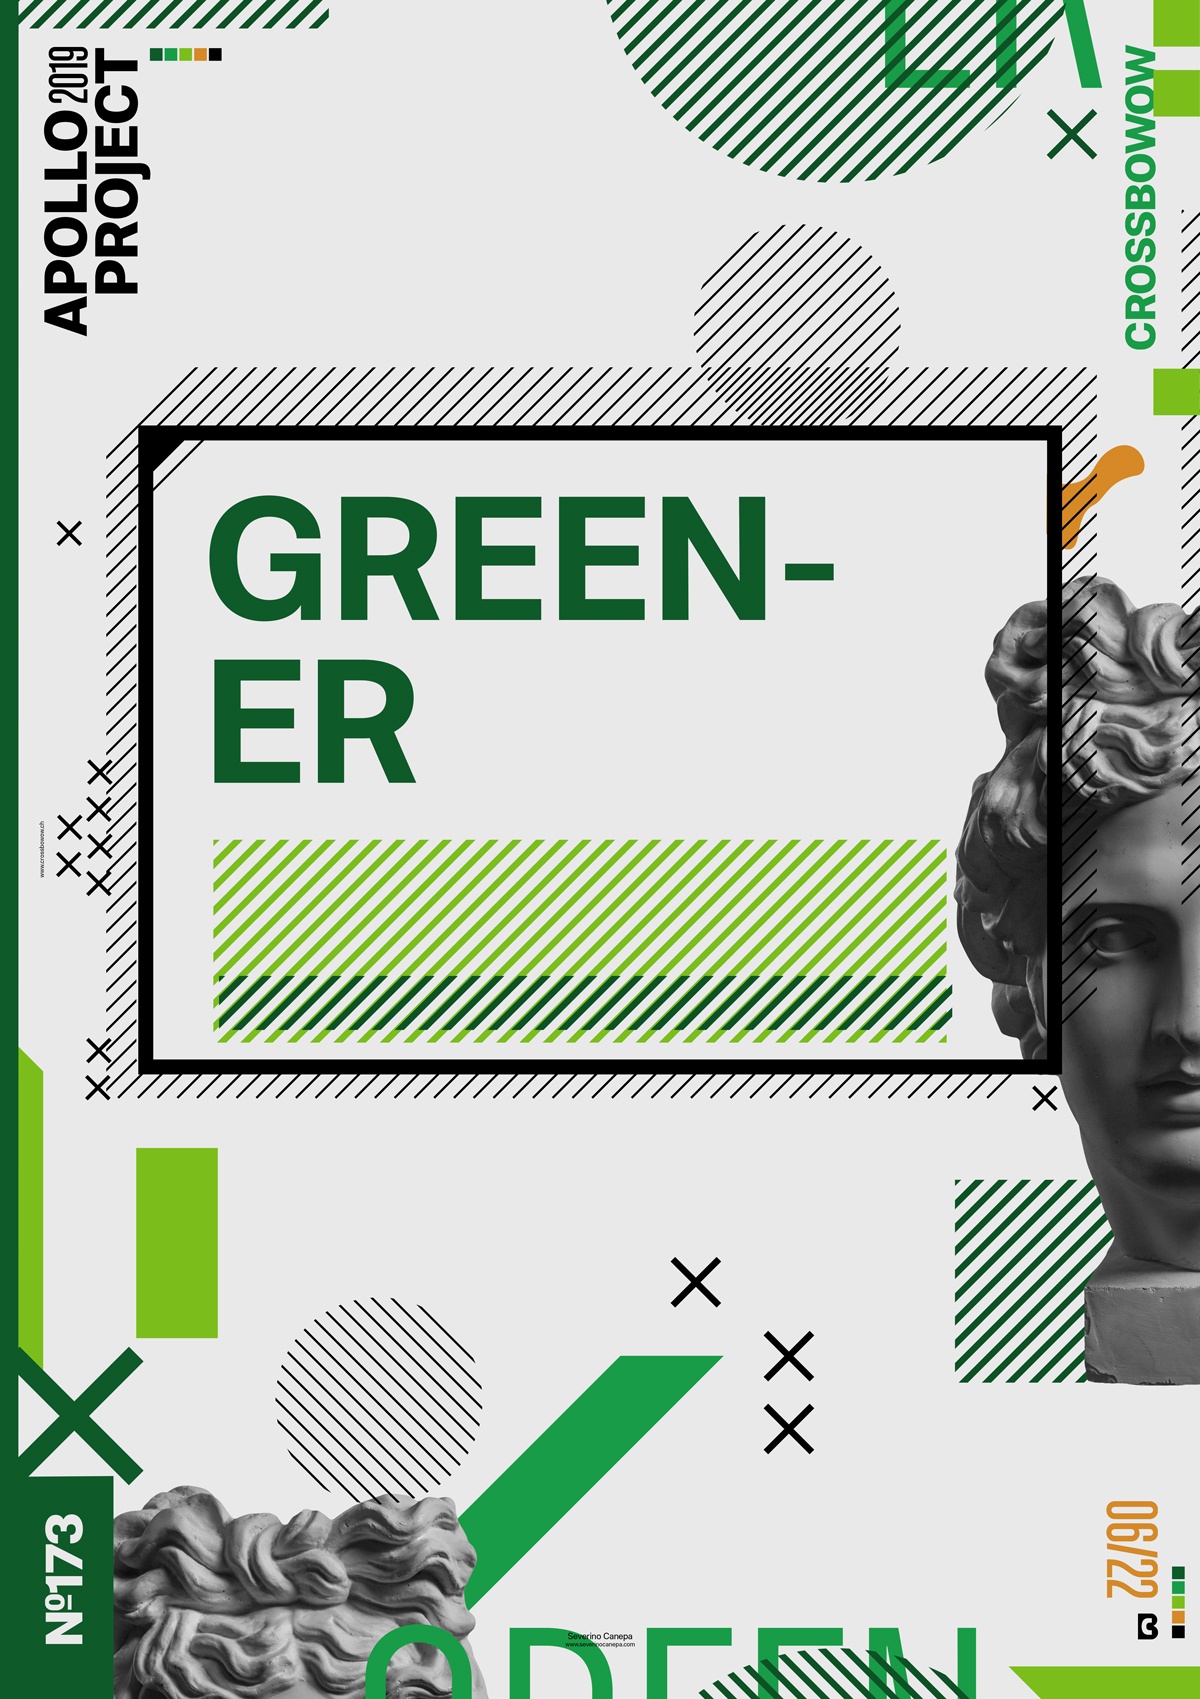 Visual poster design number 173 named Greener